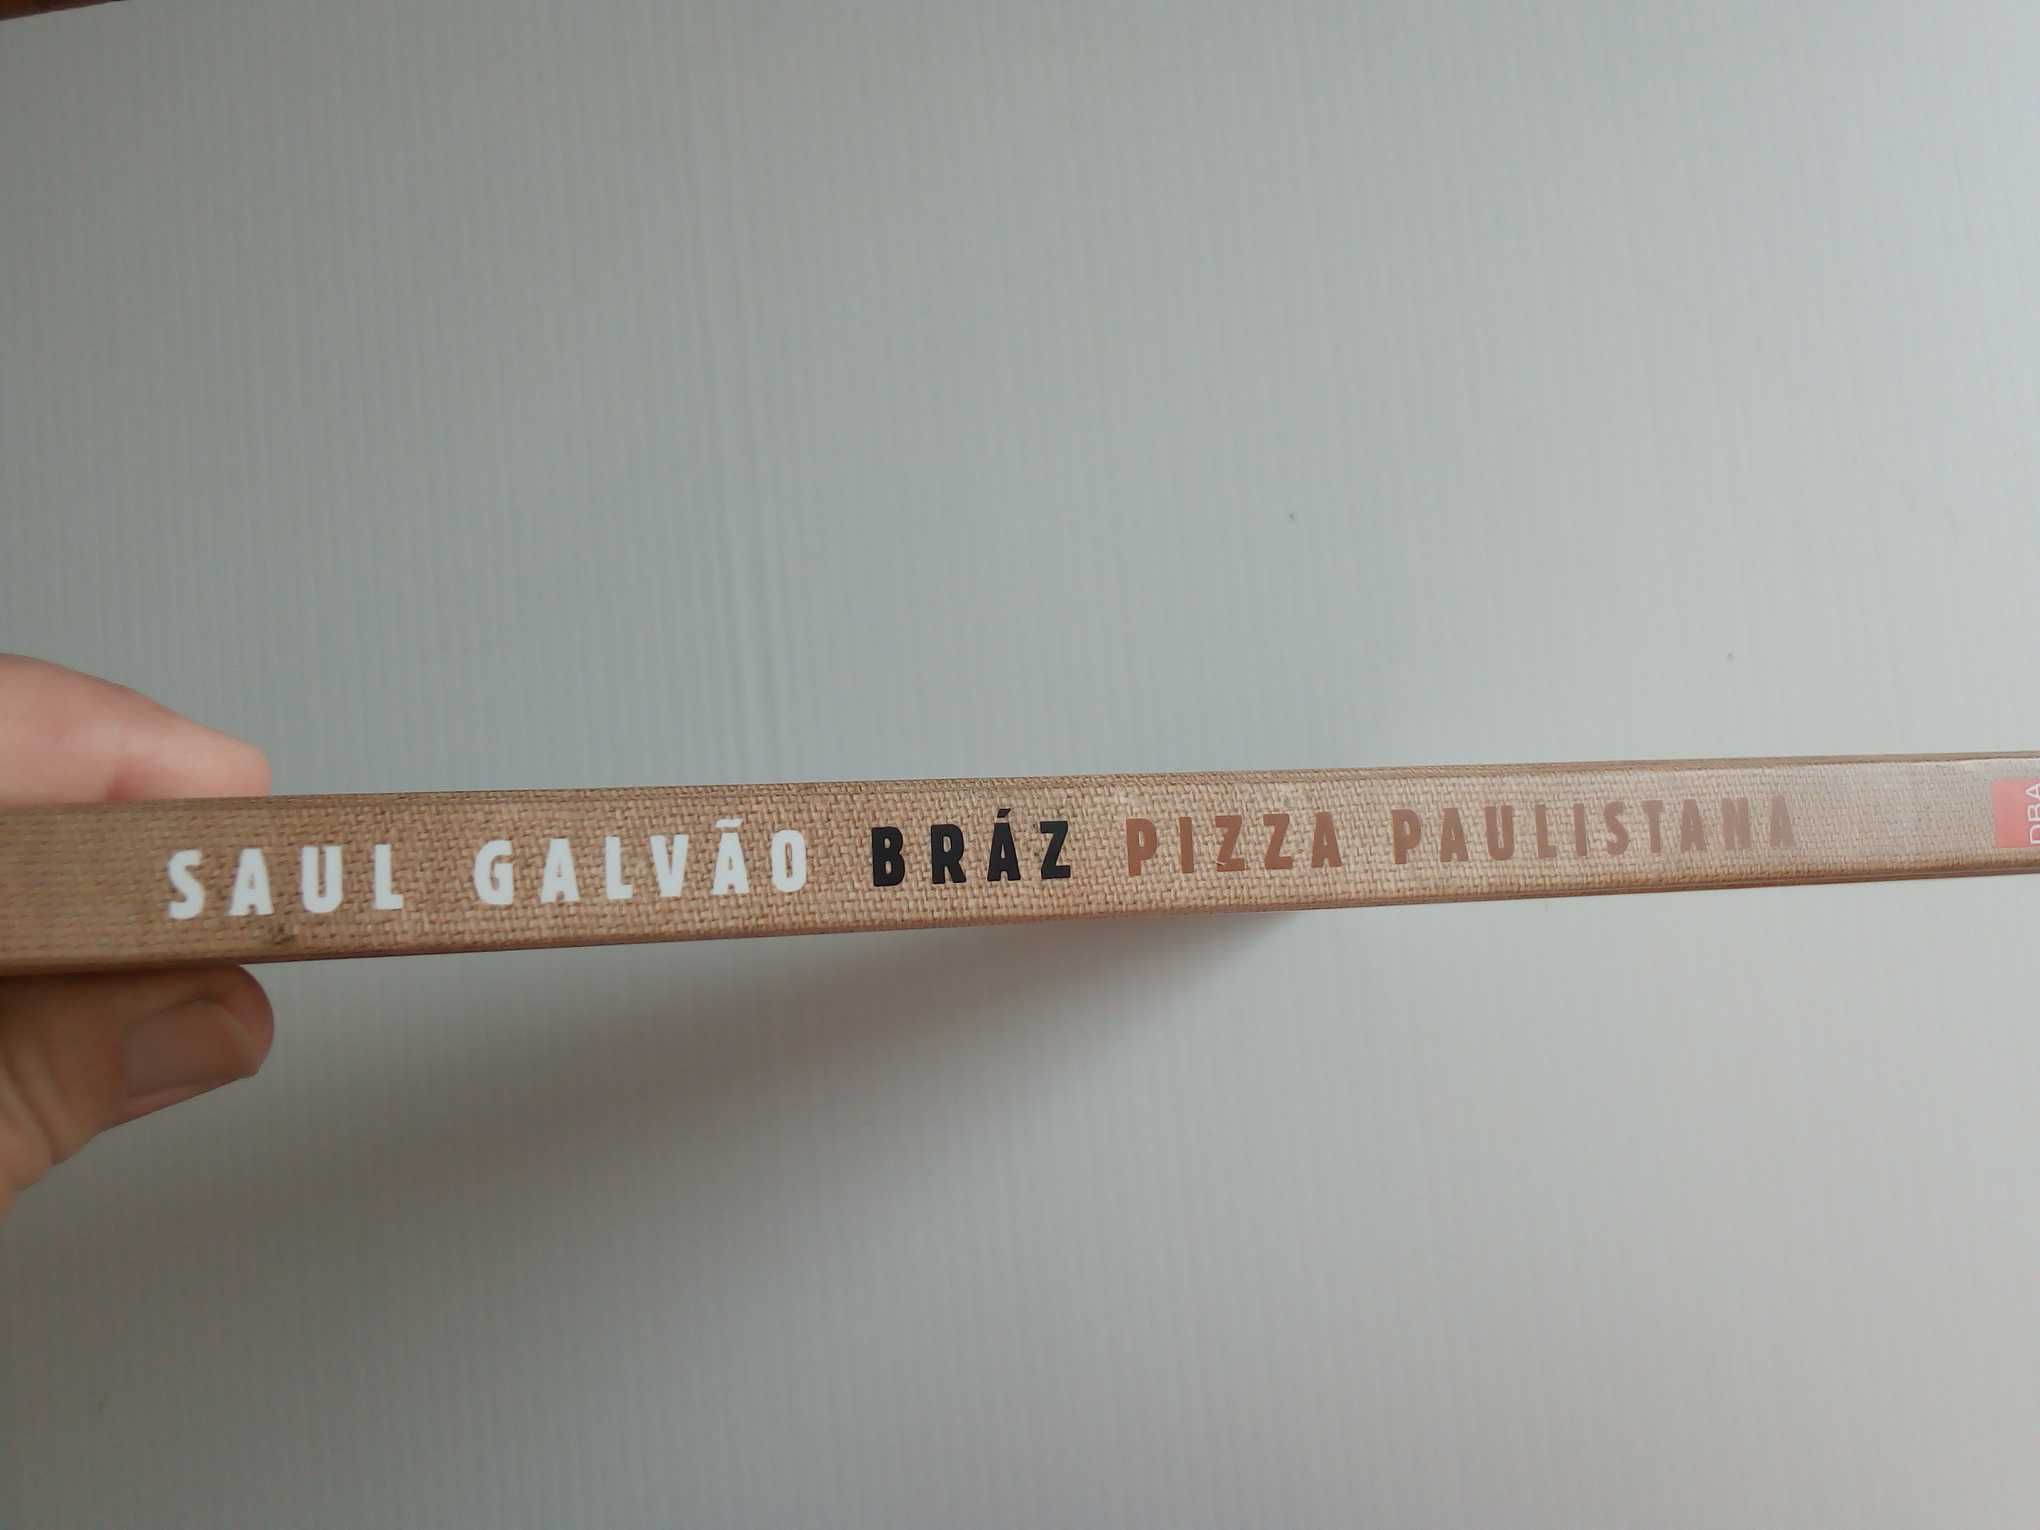 Livro " Bráz Pizza Paulistana" de Saul Galvão